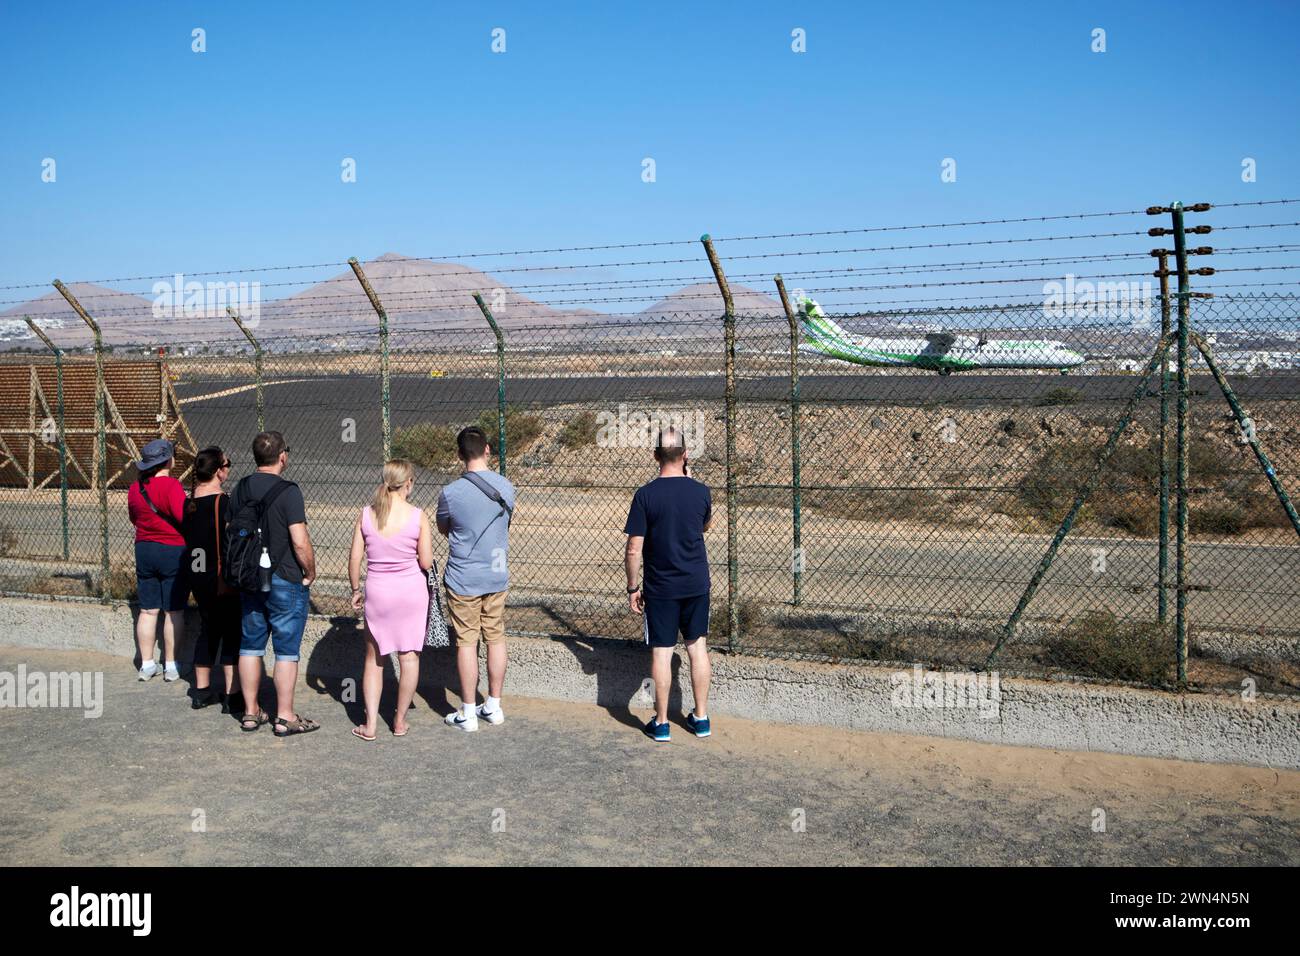 Les touristes regardant les avions décoller du sentier périmétrique de l'aéroport à la fin de la piste Lanzarote, îles Canaries, espagne Banque D'Images